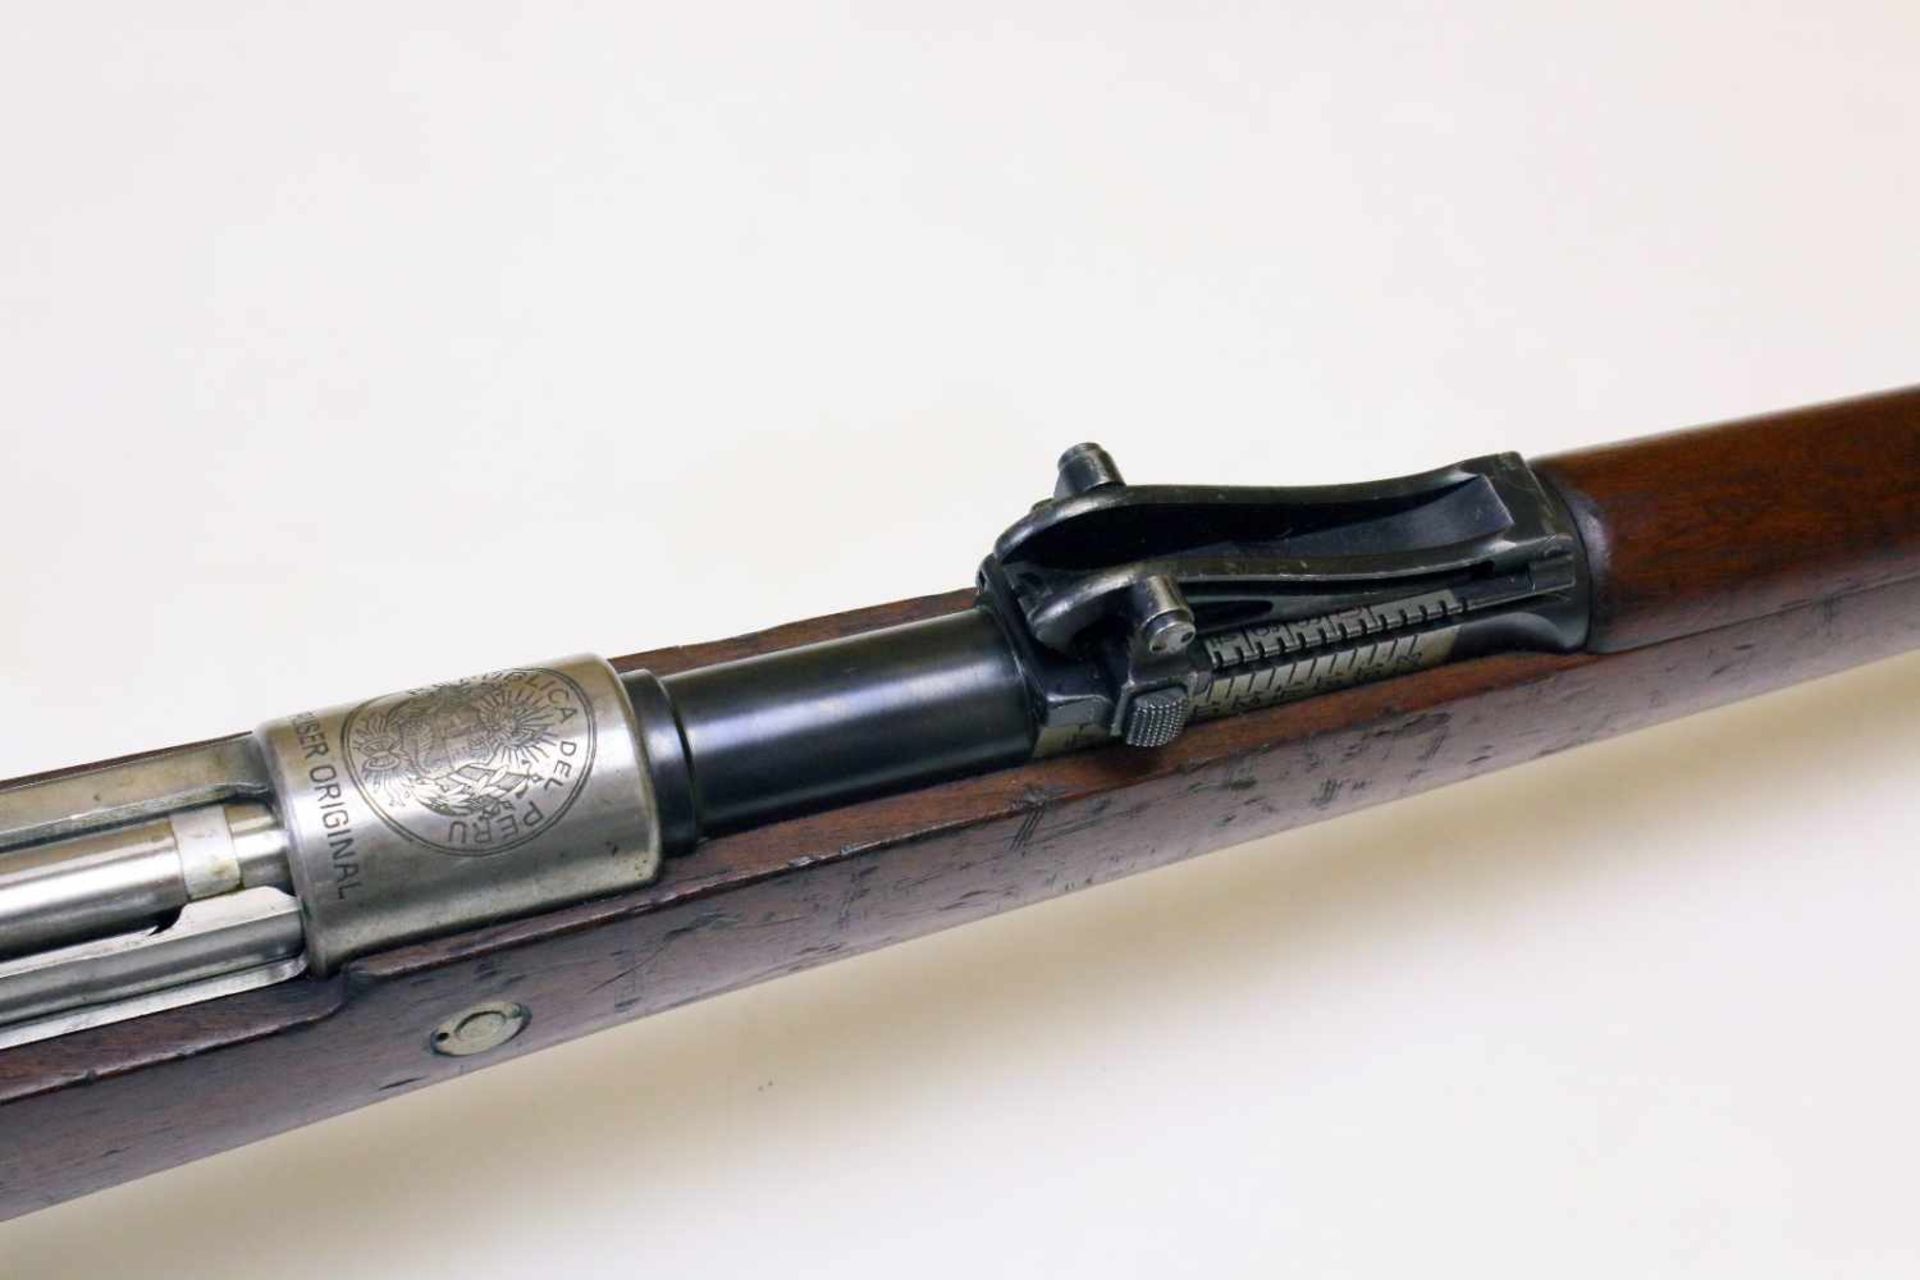 Mausergewehr M1909 Peru Cal. 7,65 x 53mm, Lauf rauh, narbig. Auf der Hülse das peruanische Wappen - Bild 4 aus 16